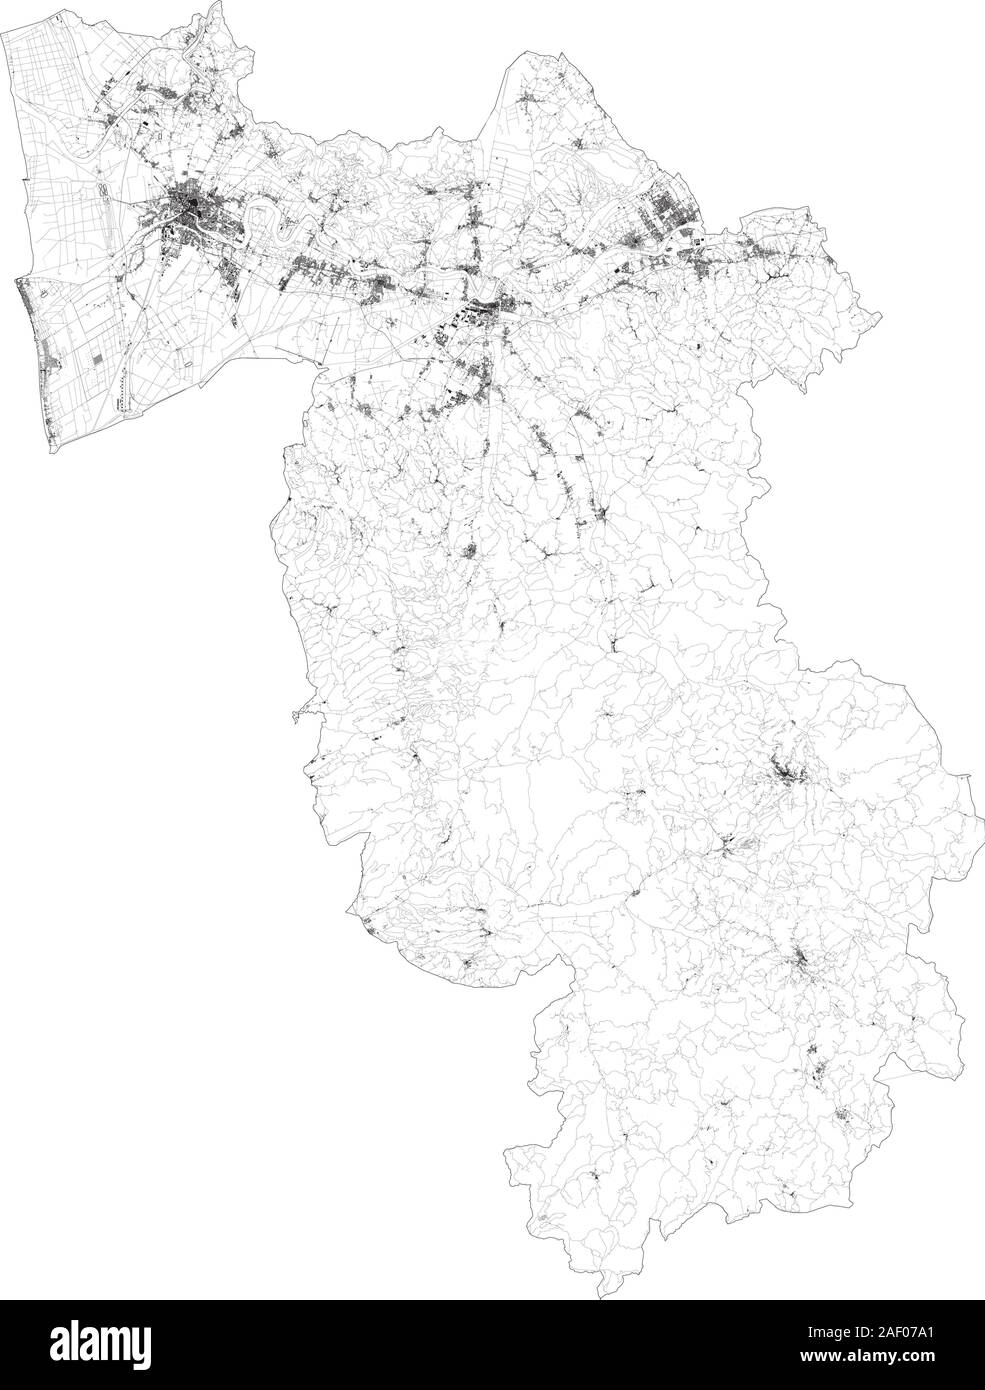 Sat-Karte der Provinz Pisa, Städte und Straßen, Gebäude und Straßen der Umgebung. Toskana, Italien. Karte Straßen, Ringstraßen Stock Vektor